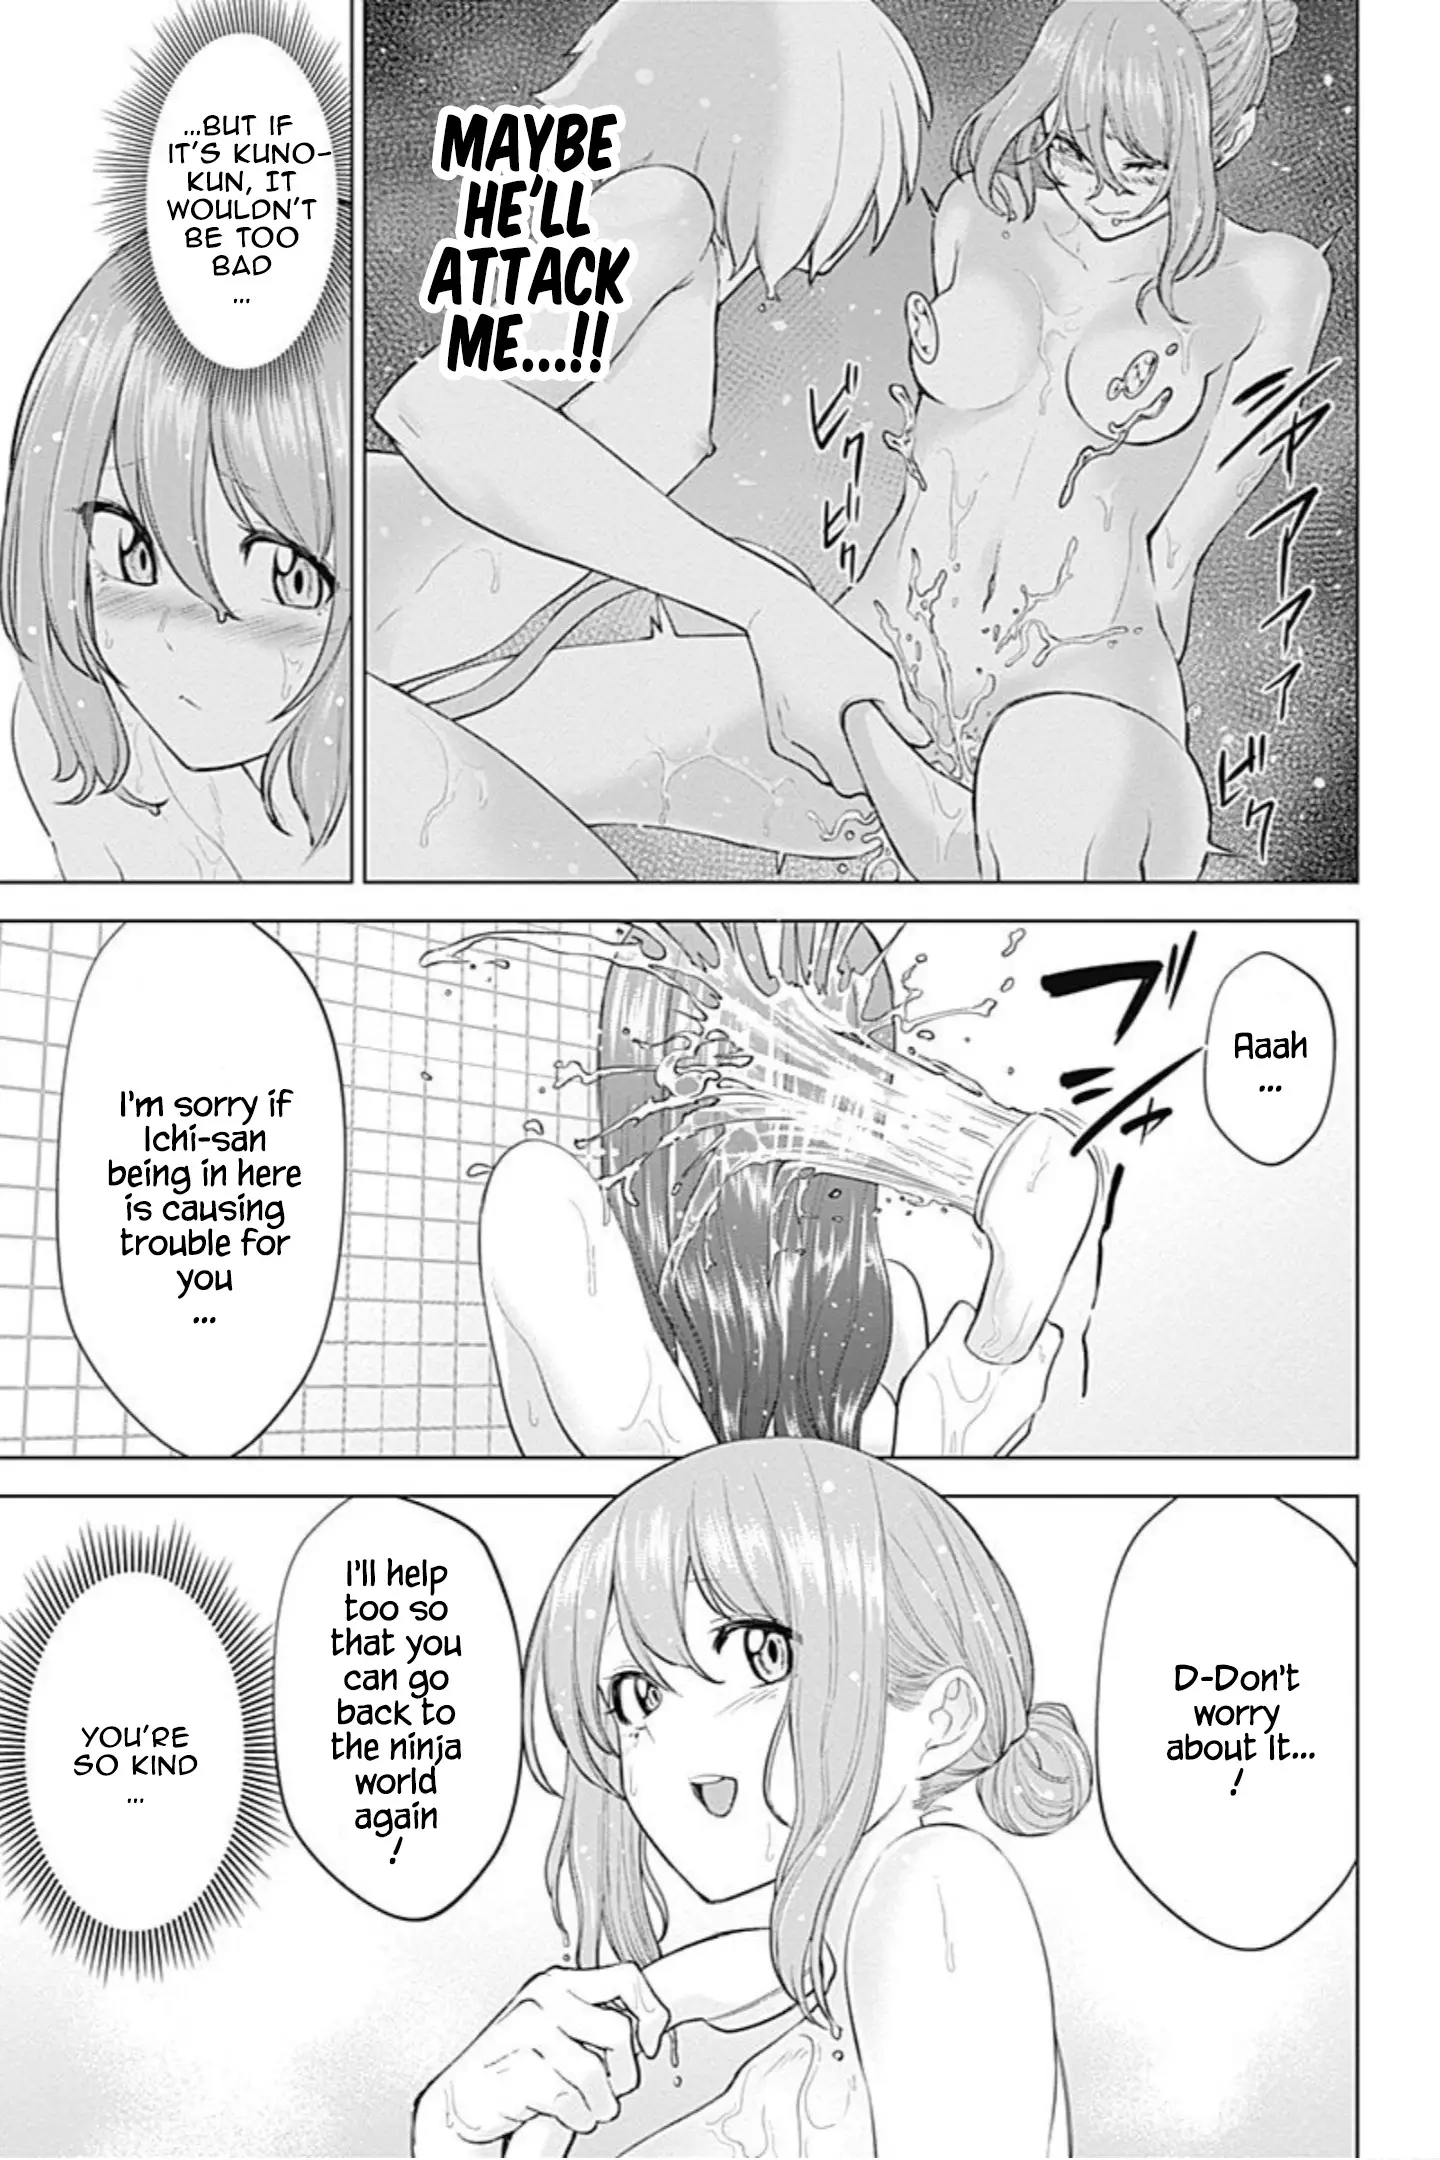 Kunoichi No Ichi! No Ni - 8 page 9-2c21de8a